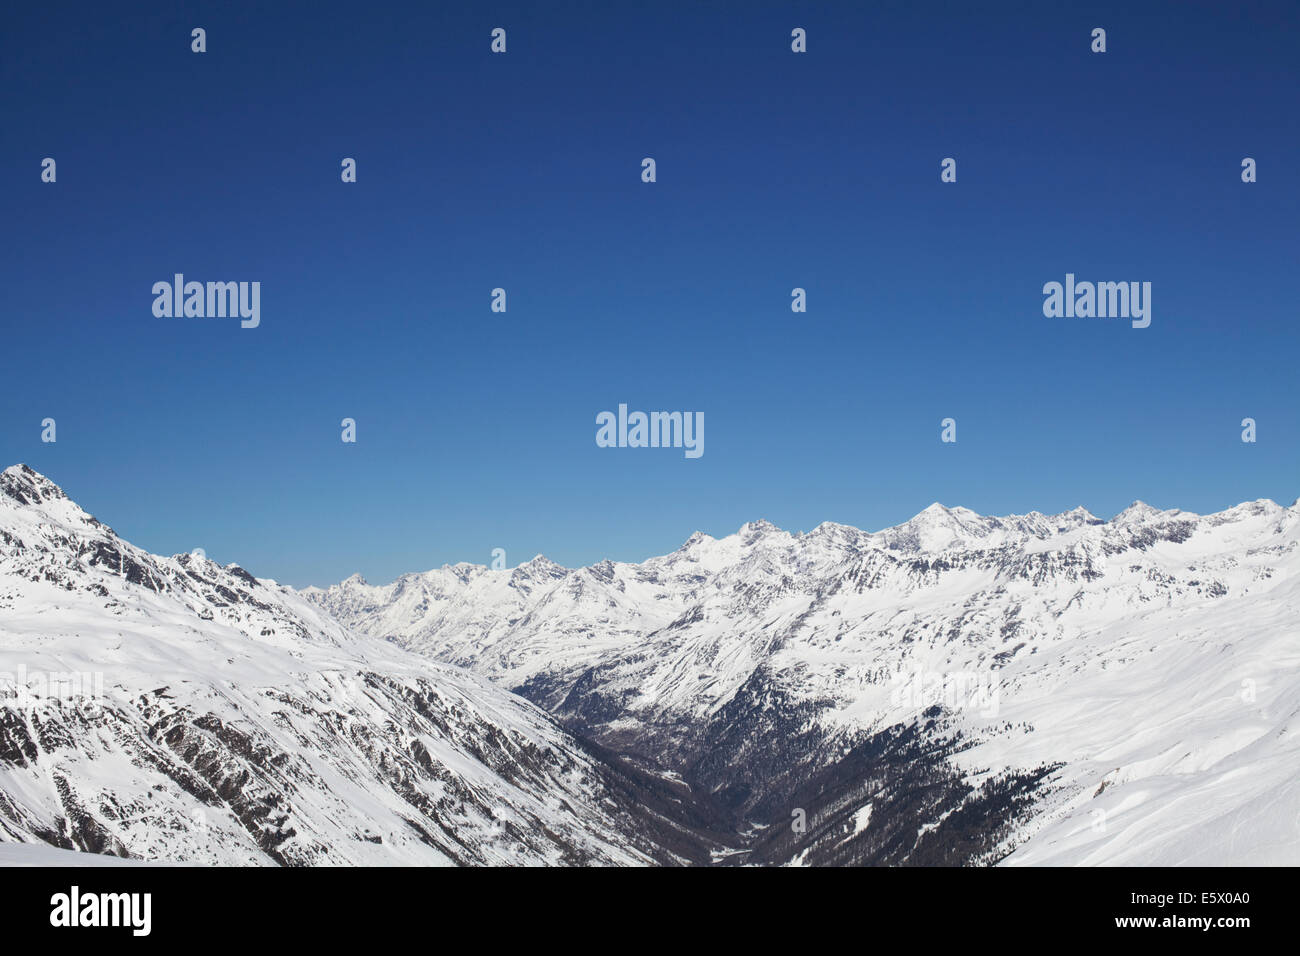 View of snow covered mountain range, Austria Stock Photo